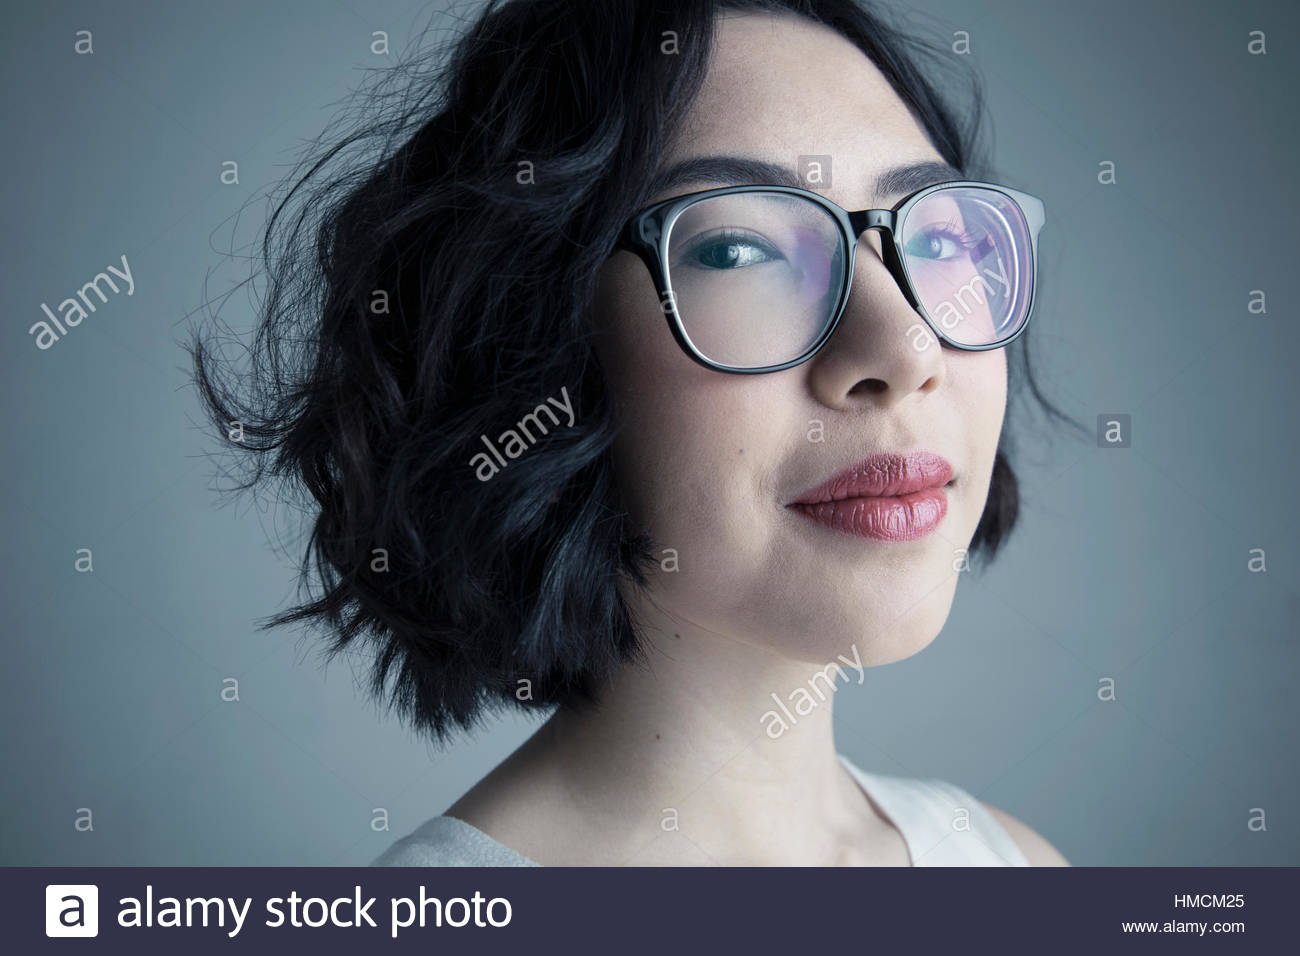 Close up portrait of certain mixed race jeune femme avec des cheveux noirs et lunettes Banque D'Images